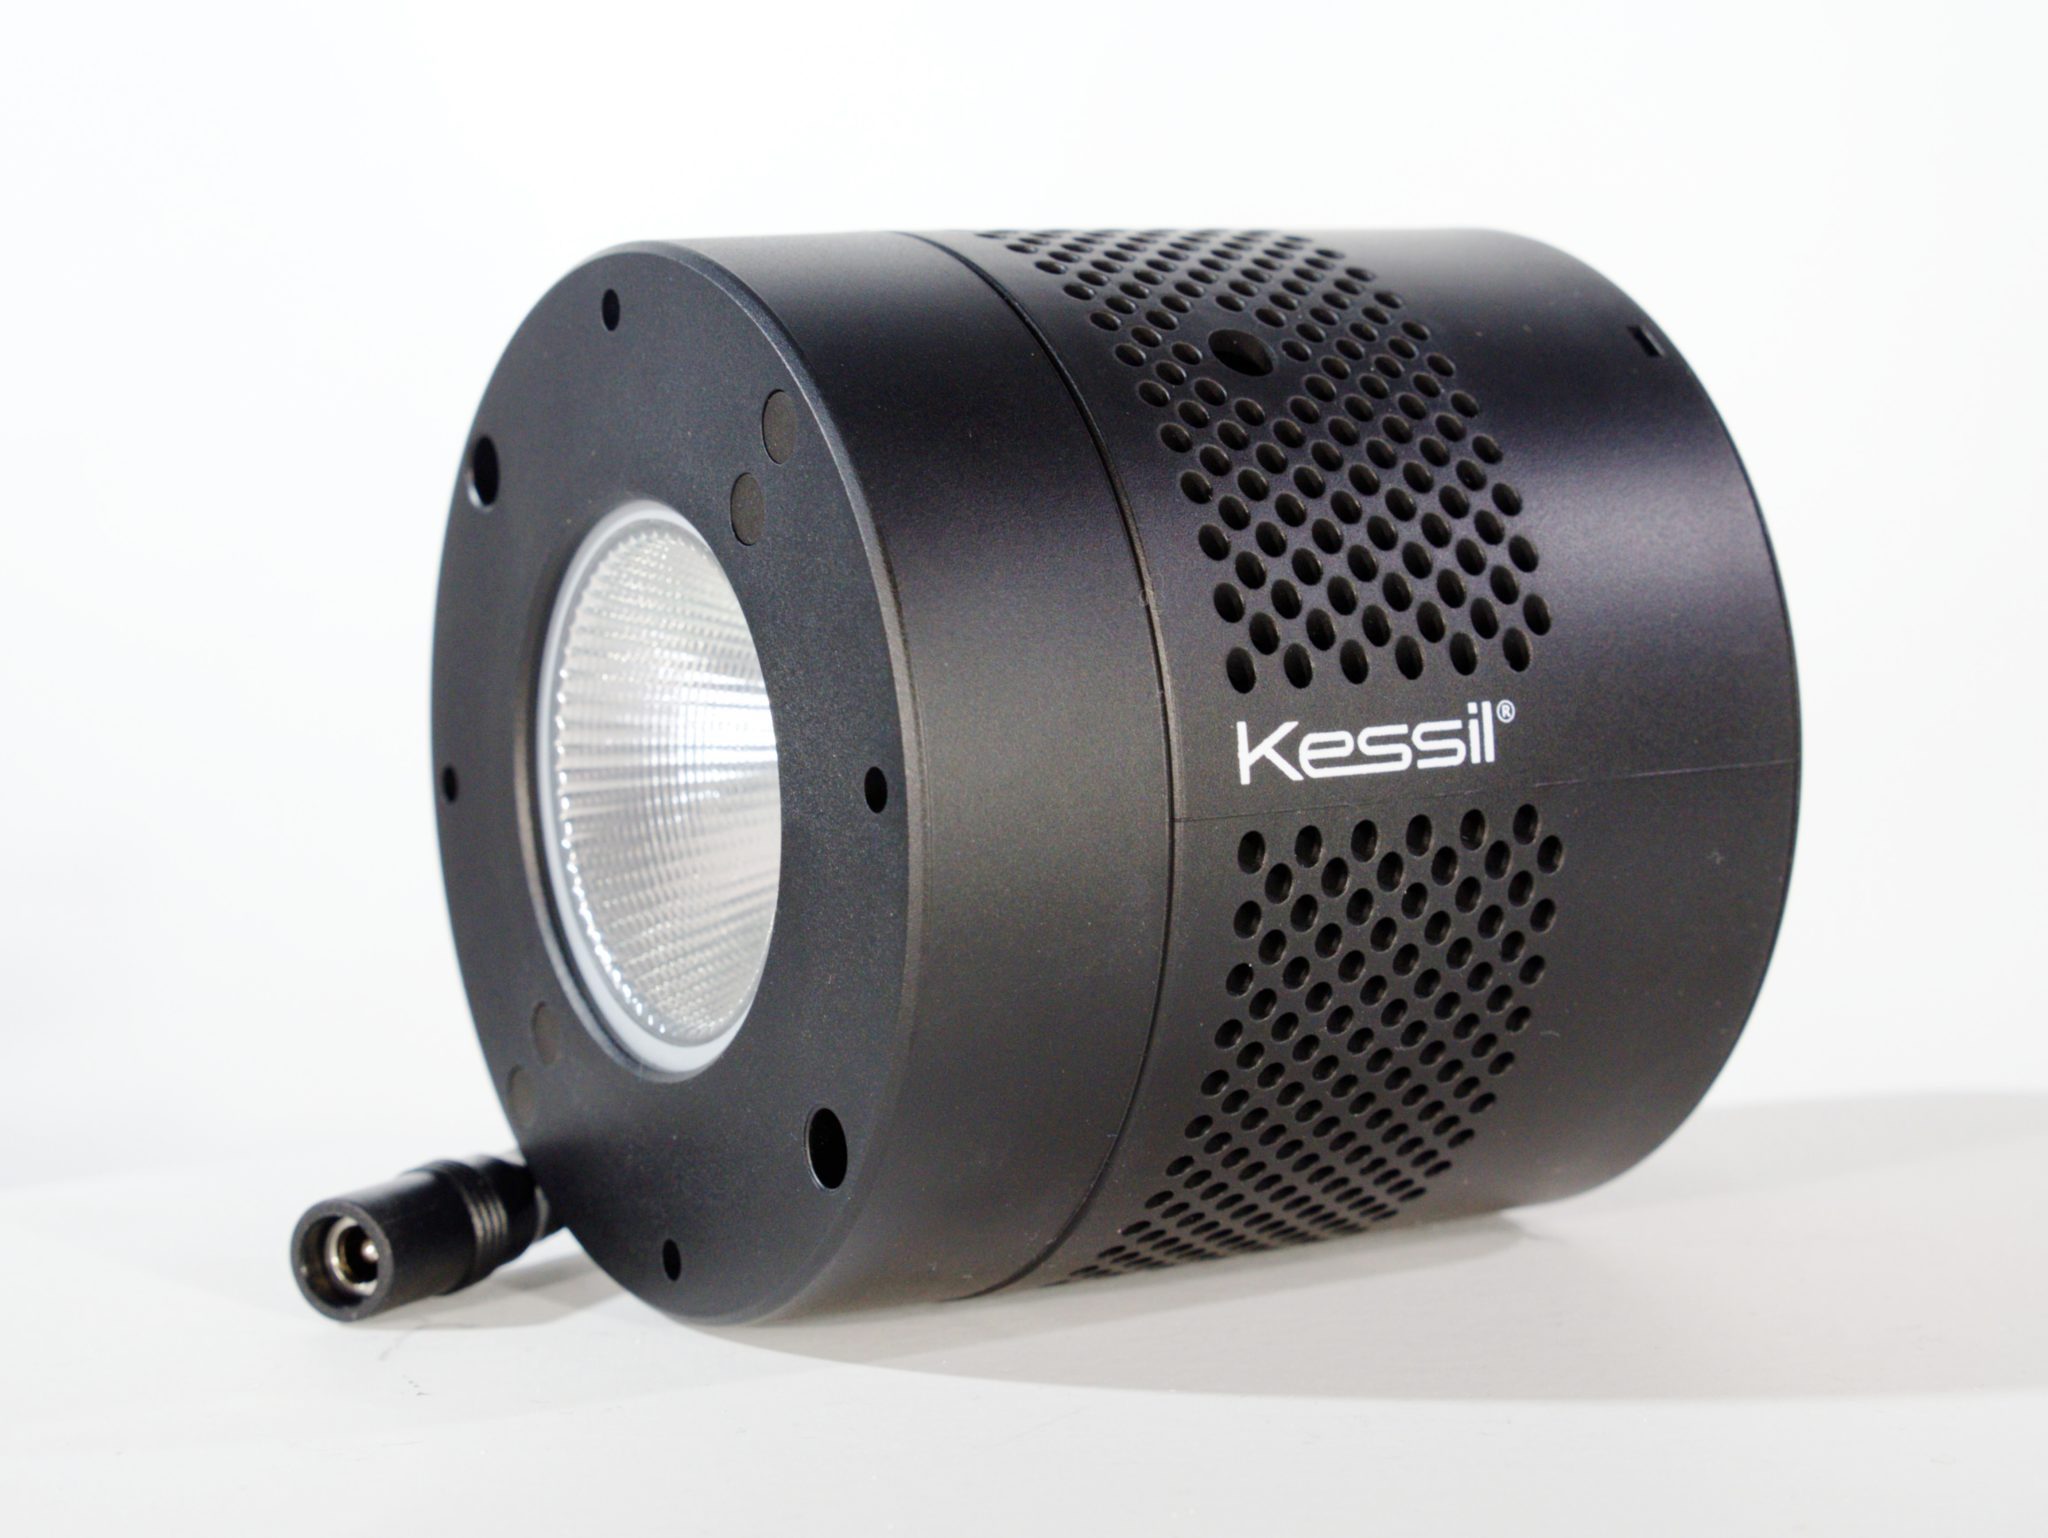 The new Kessil refugium lighting!